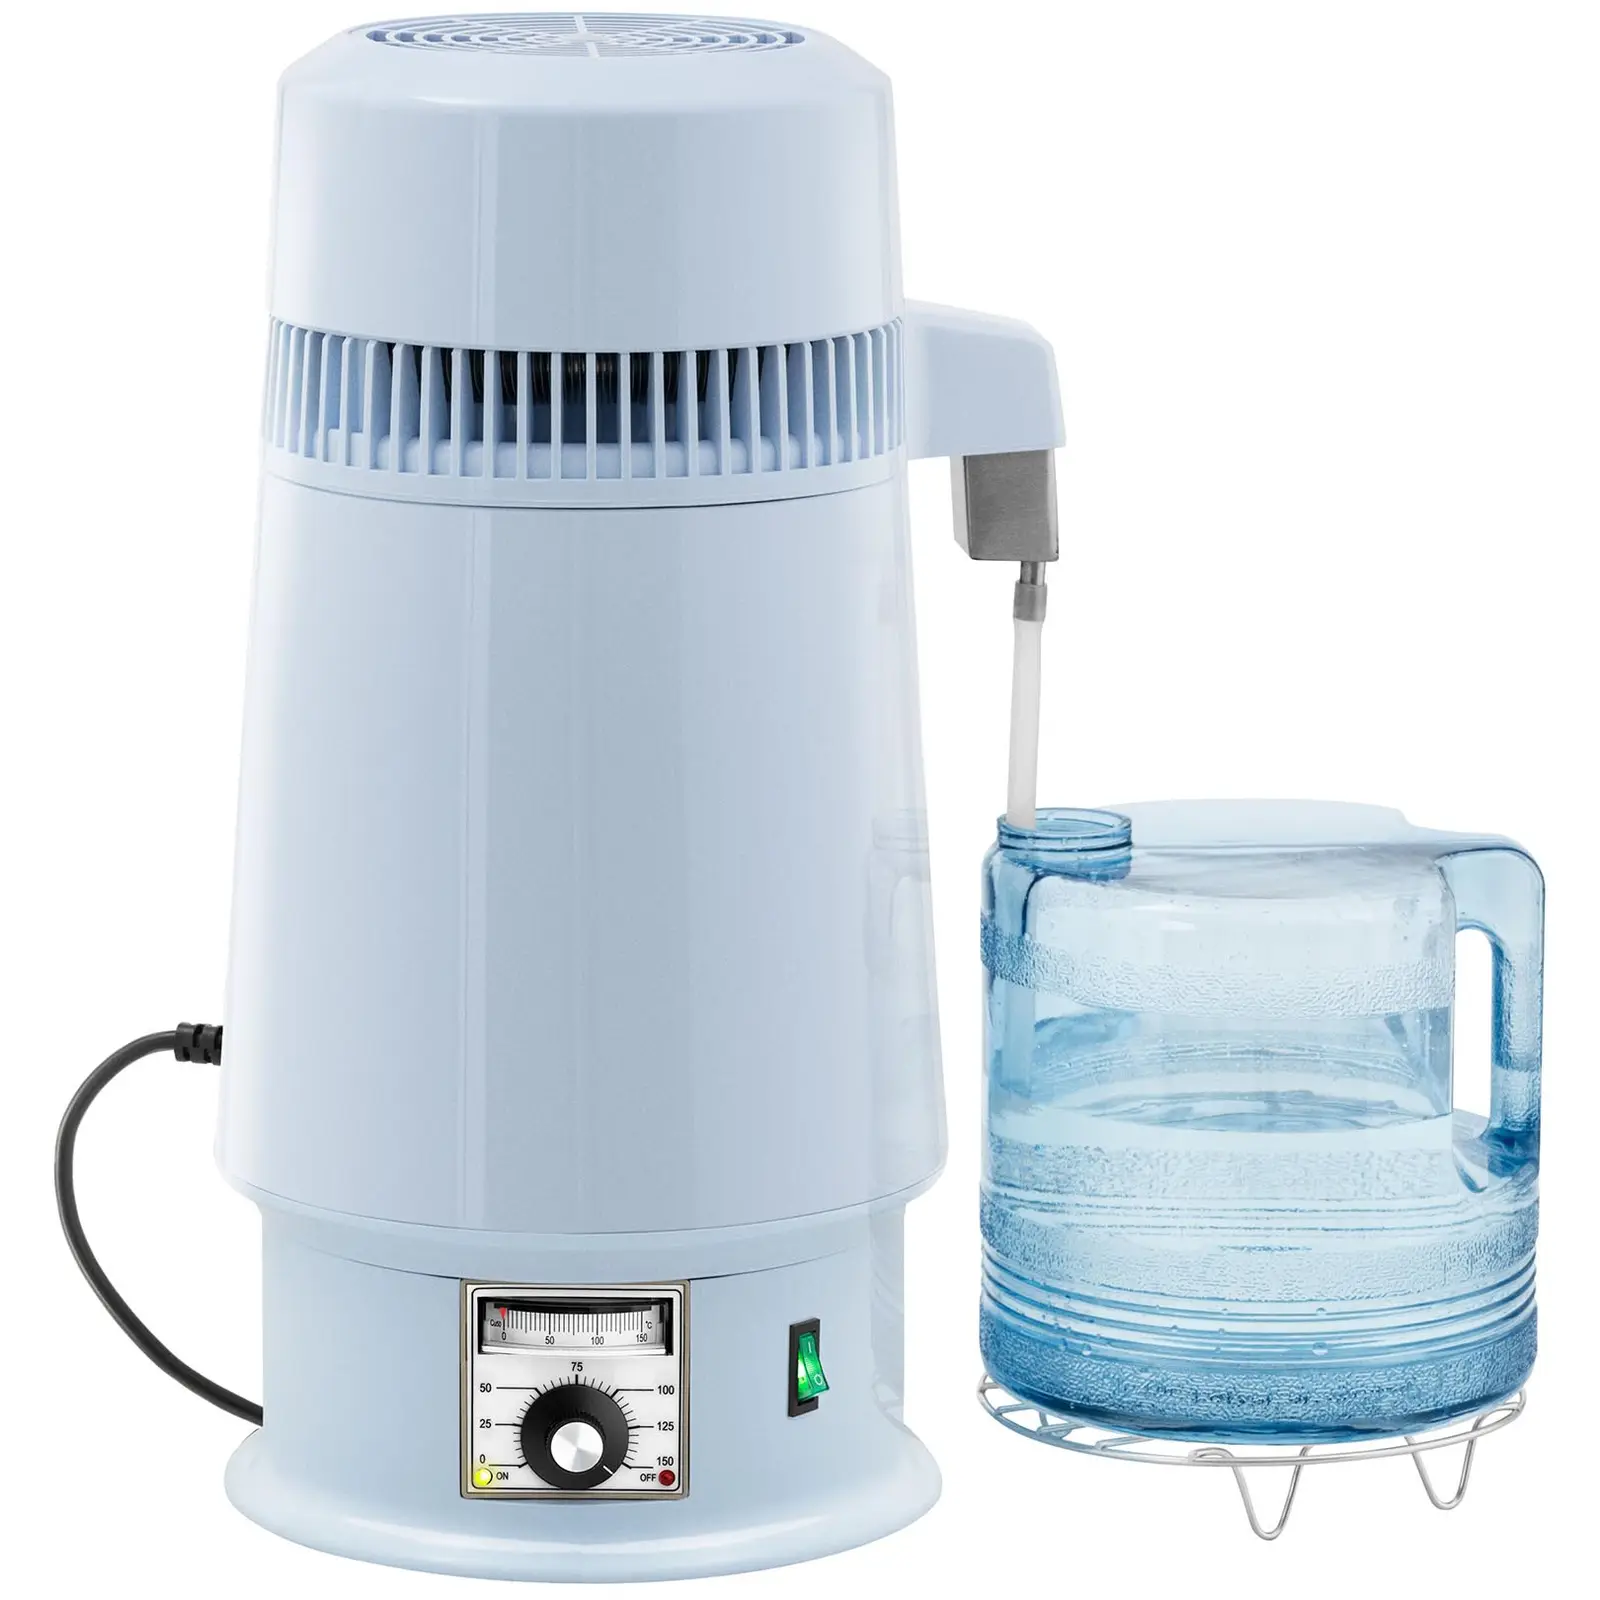 Destilliergerät - Wasser - 4 L - Temperatur einstellbar